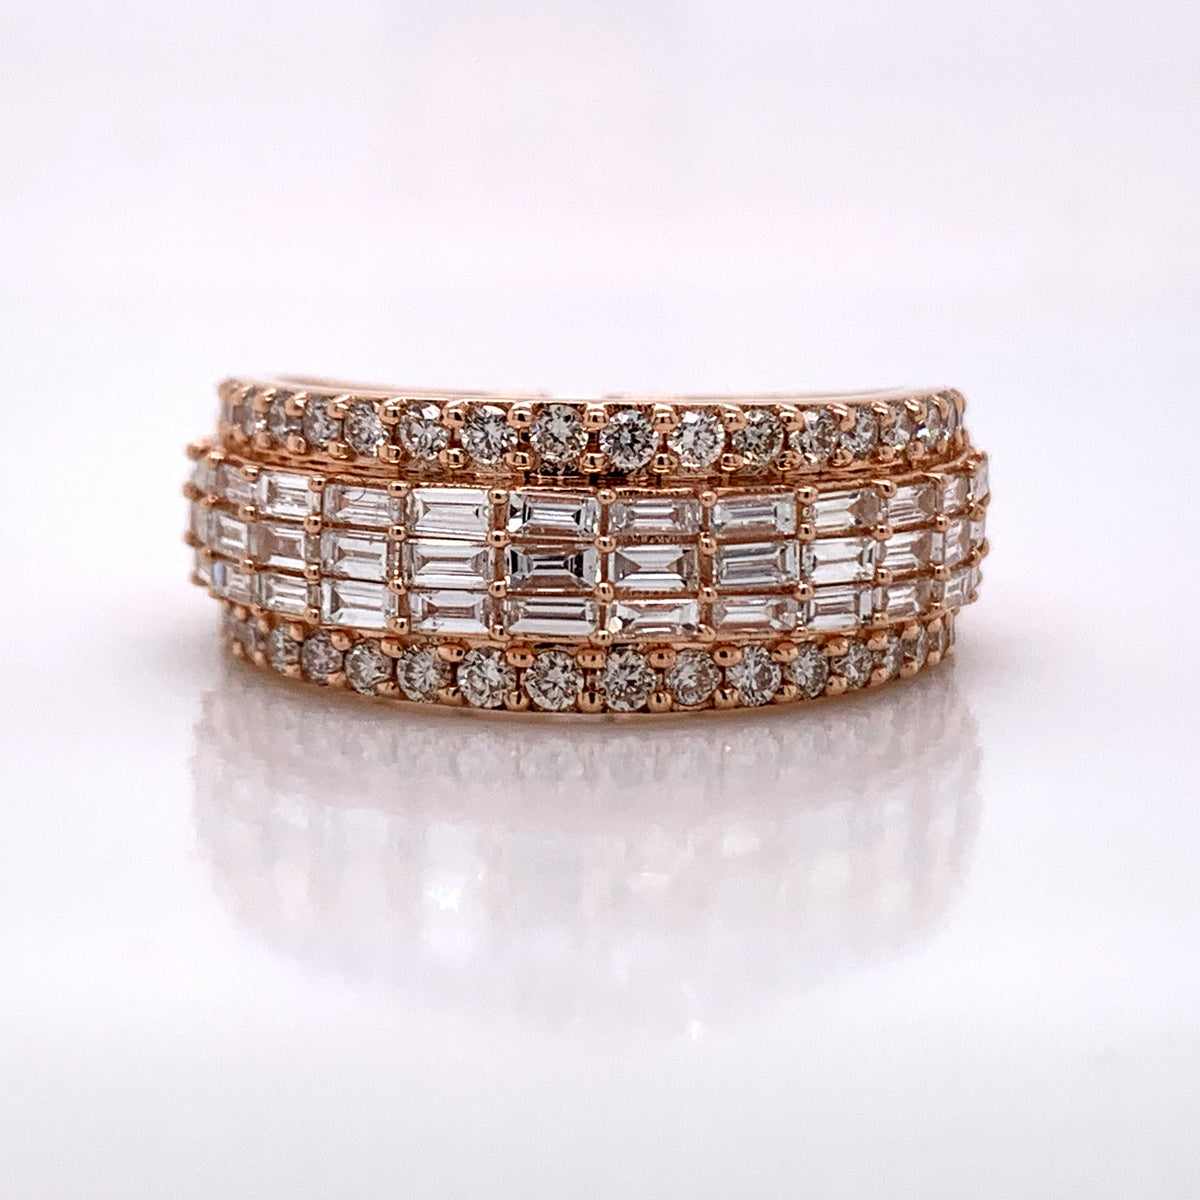 1.92CT Diamond 14K Rose Gold Ring - White Carat Diamonds 